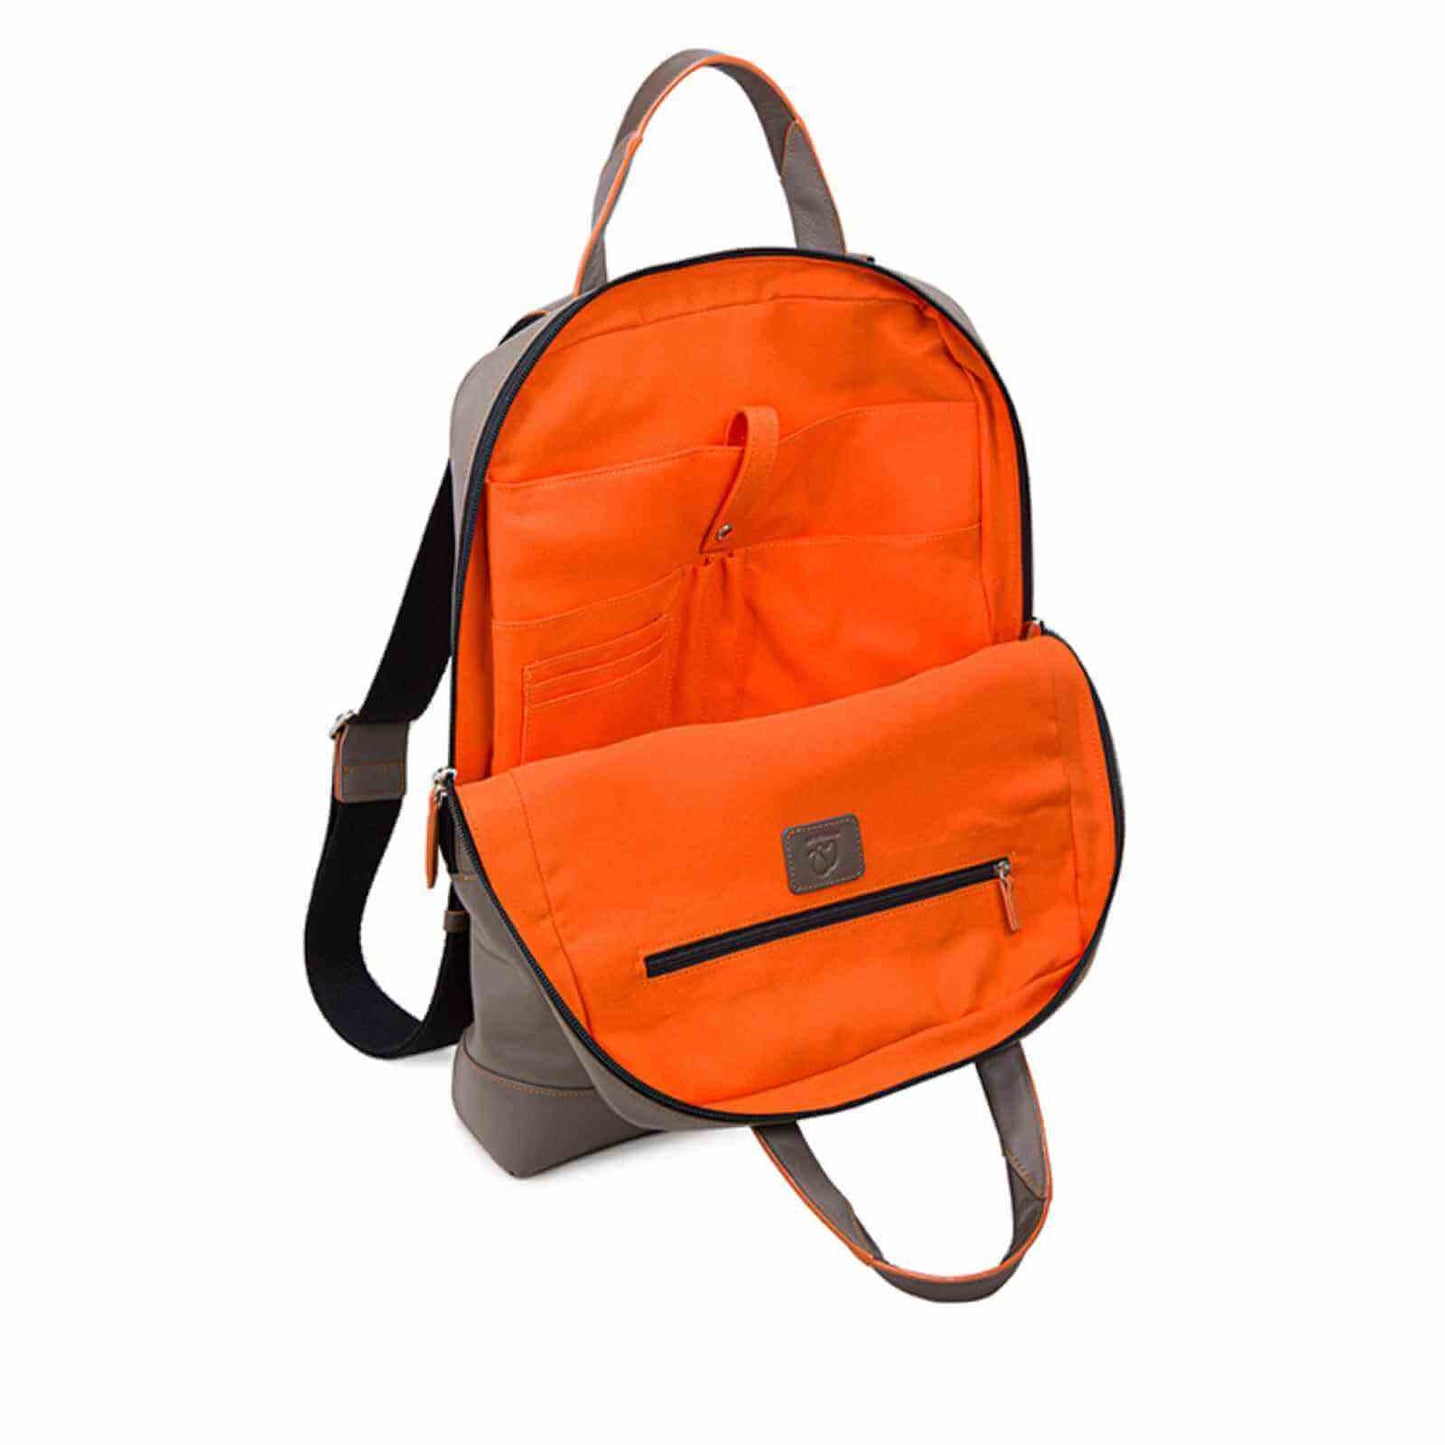 Orange indvendig i smal Laptop rygsæk fra MyWalit